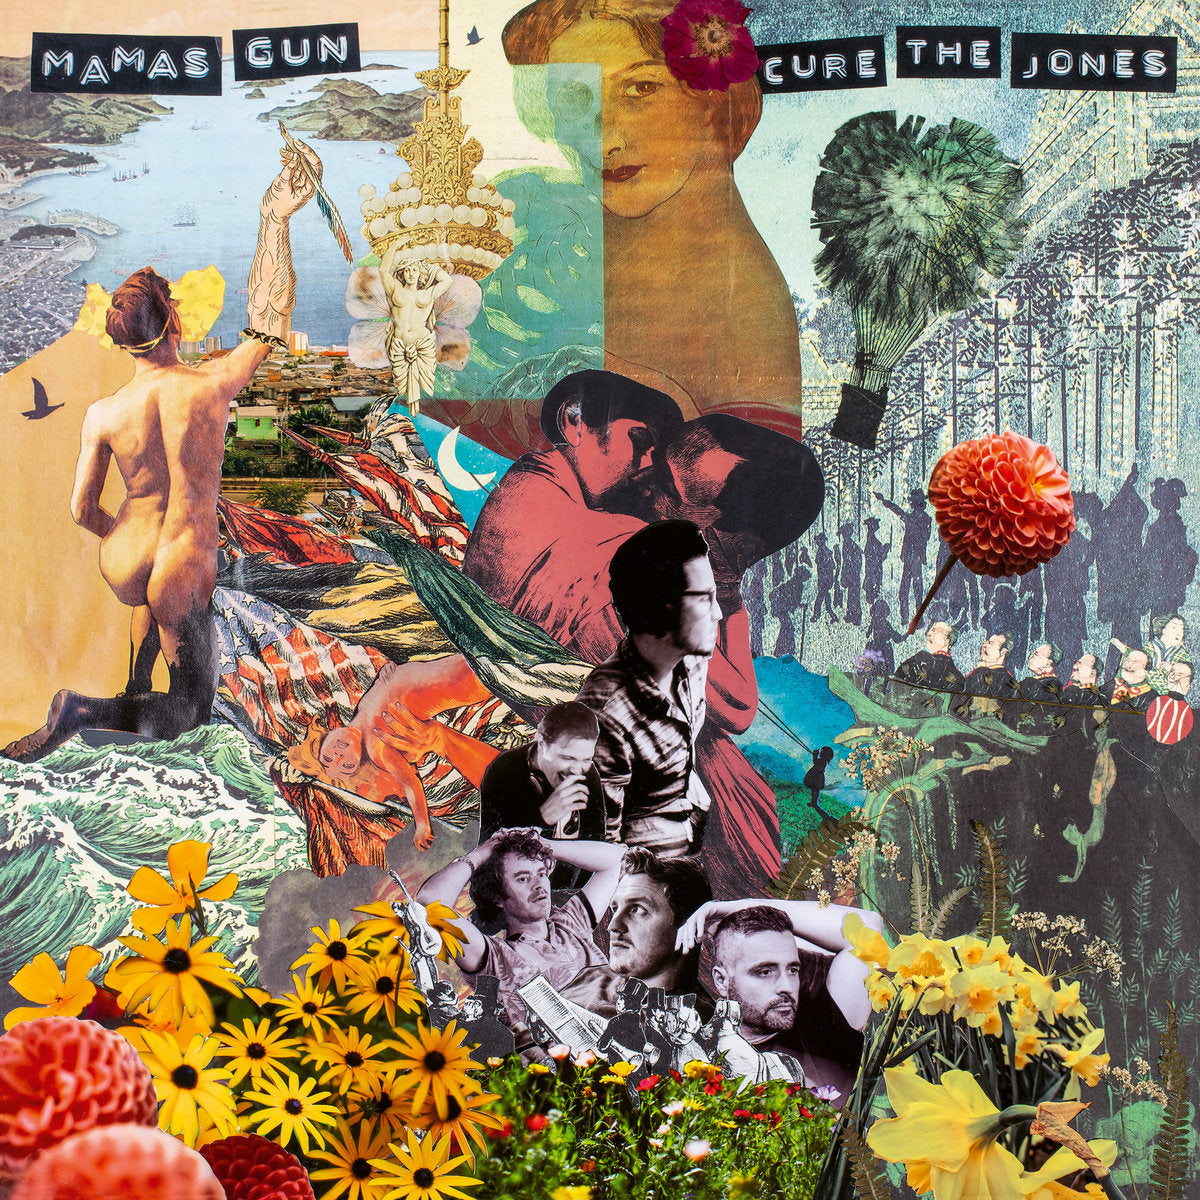 MAMAS GUN - CURE THE JONES Vinyl LP